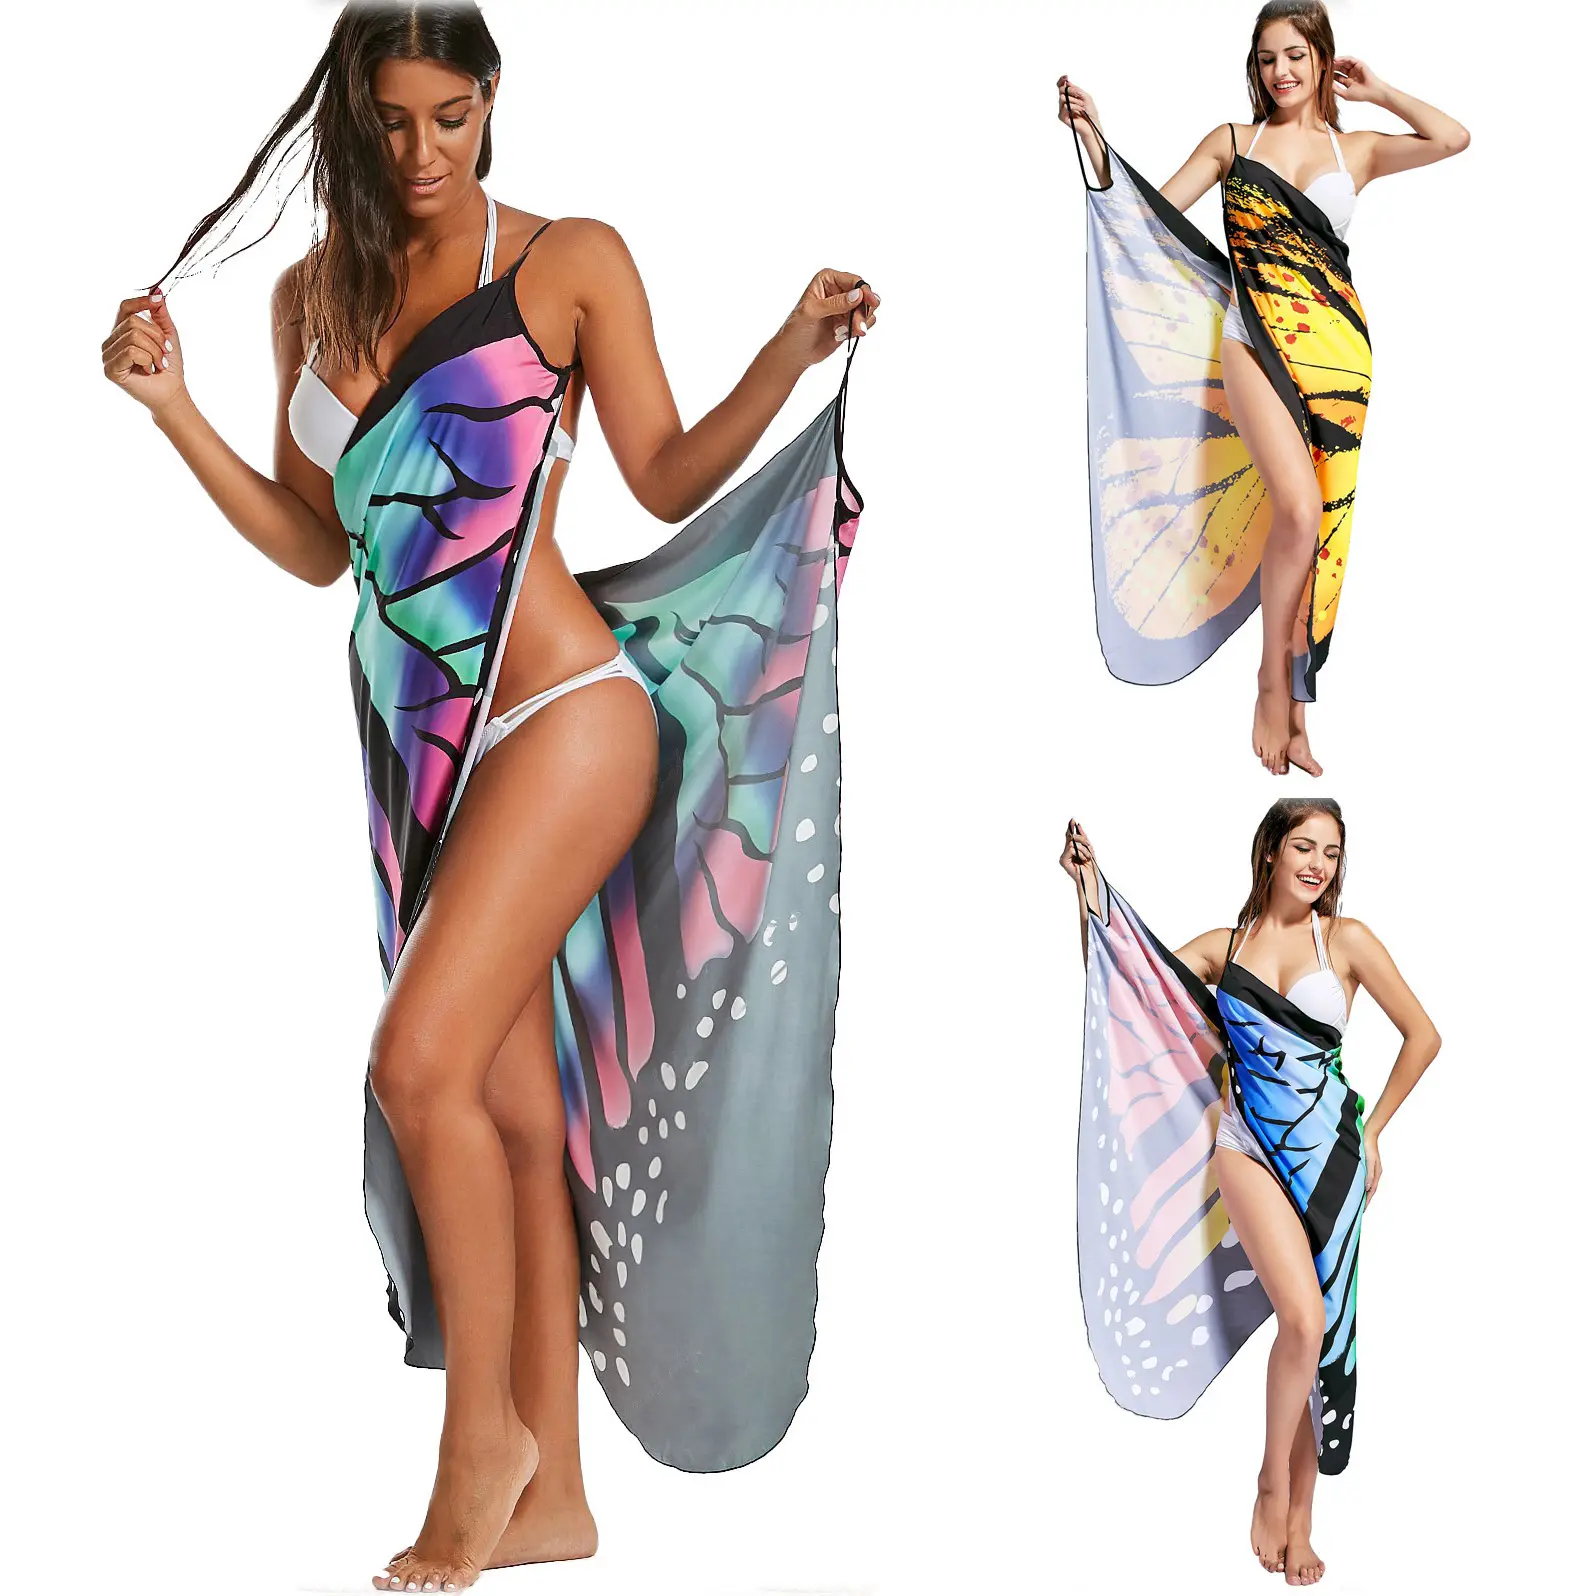 Vendita al dettaglio all'ingrosso 1 pz ordine TieDie sublimazione stampato bella farfalla cinturino costume da bagno vestito costume da bagno copertura